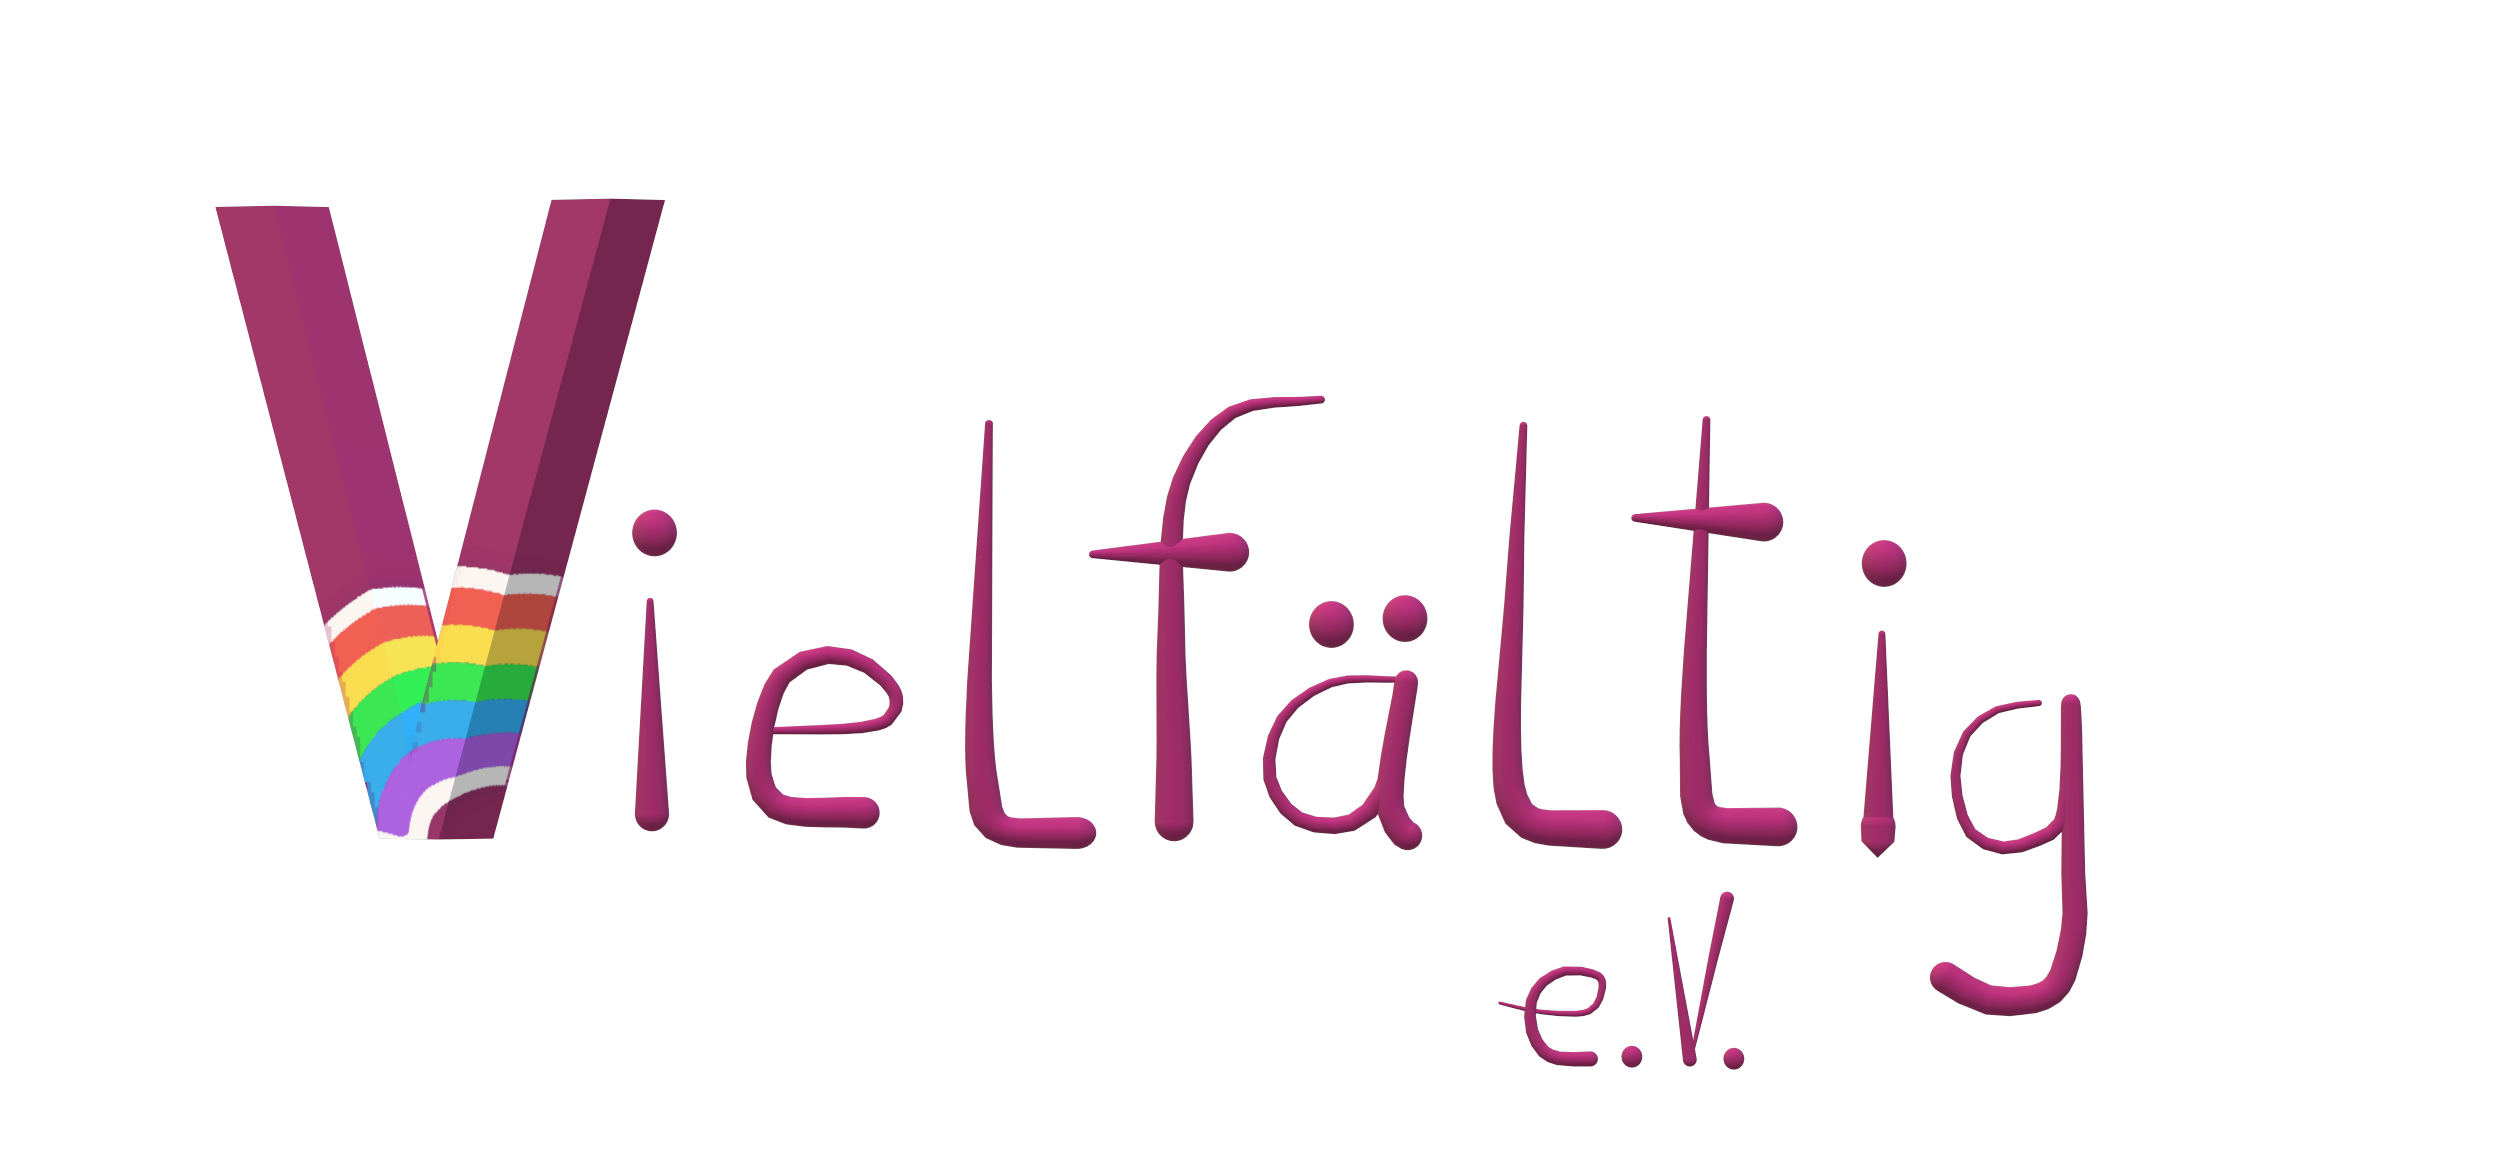 Logo des MKFFI